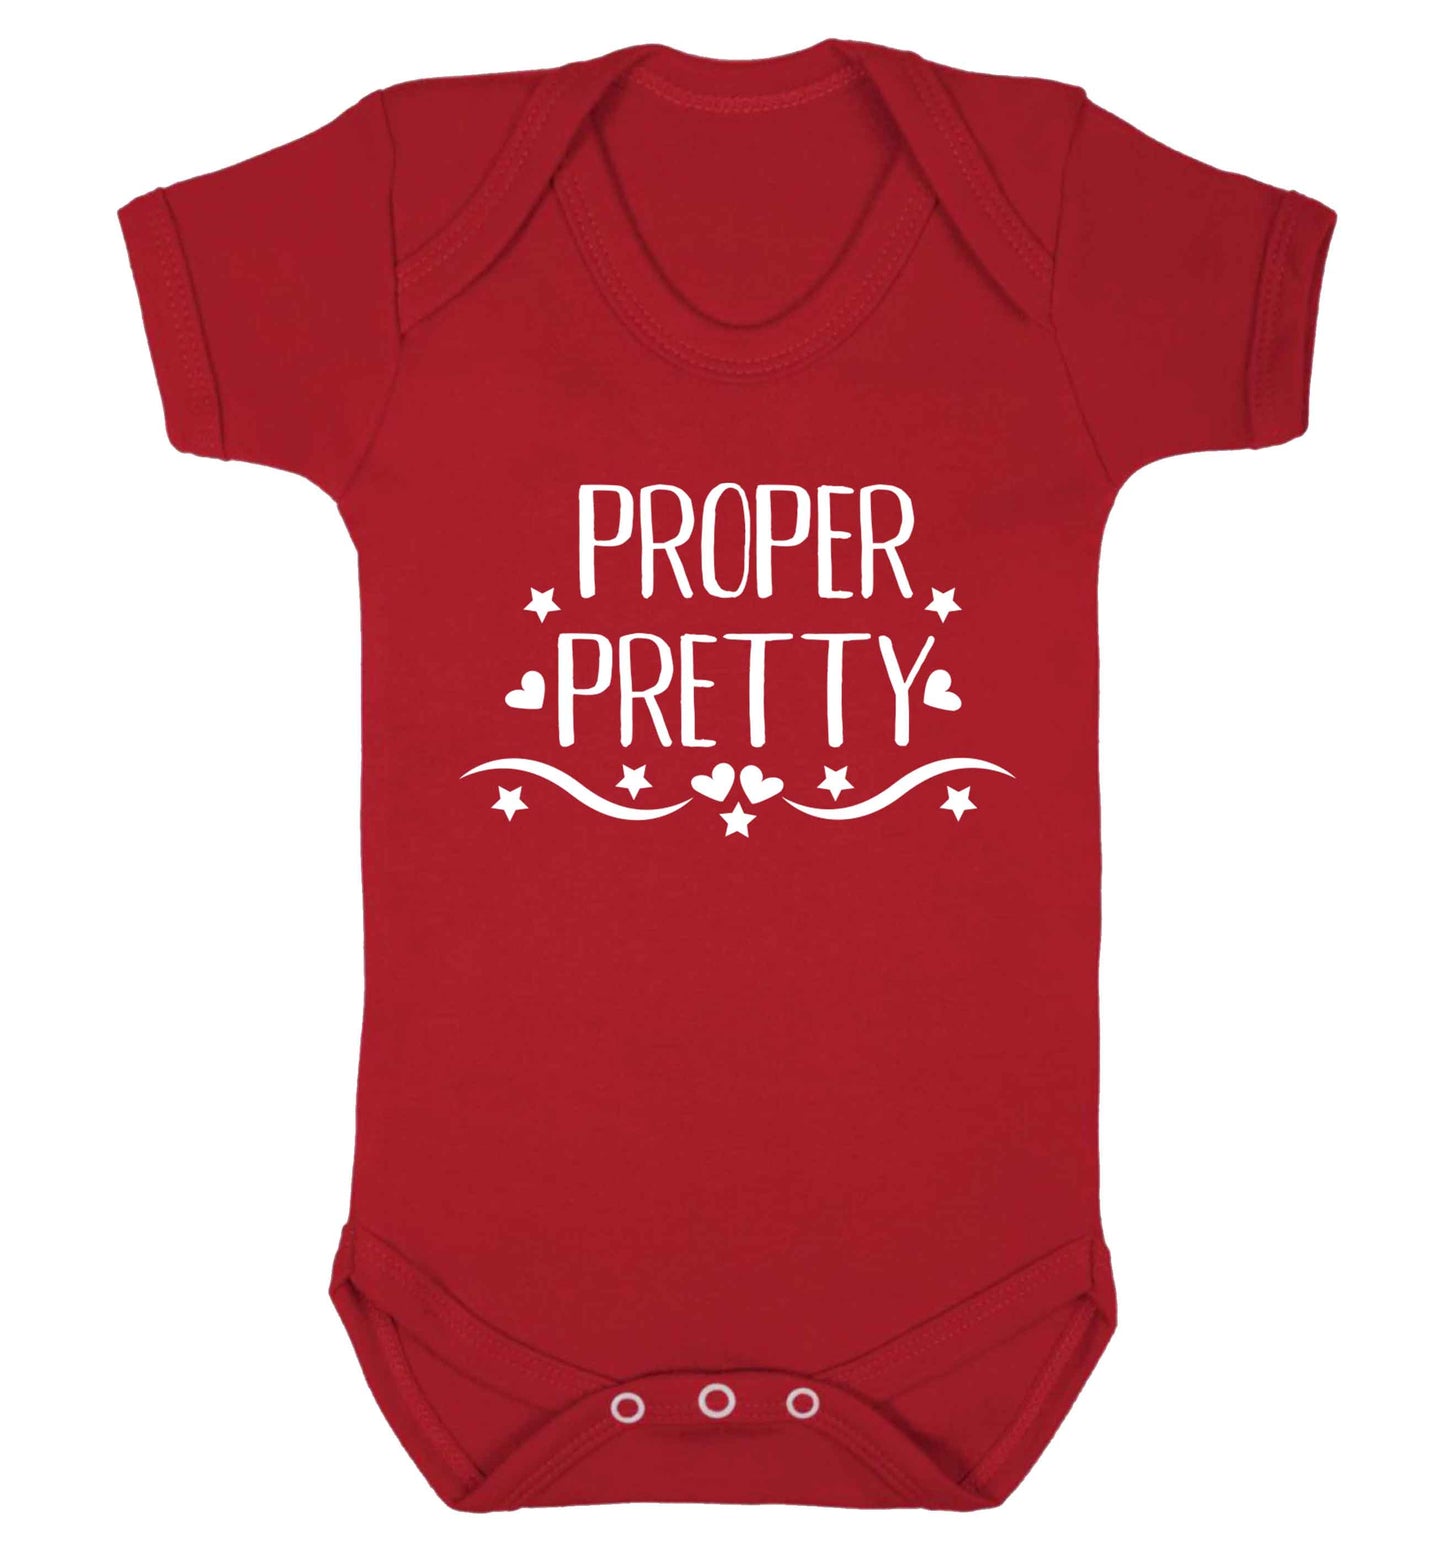 Proper pretty Baby Vest red 18-24 months